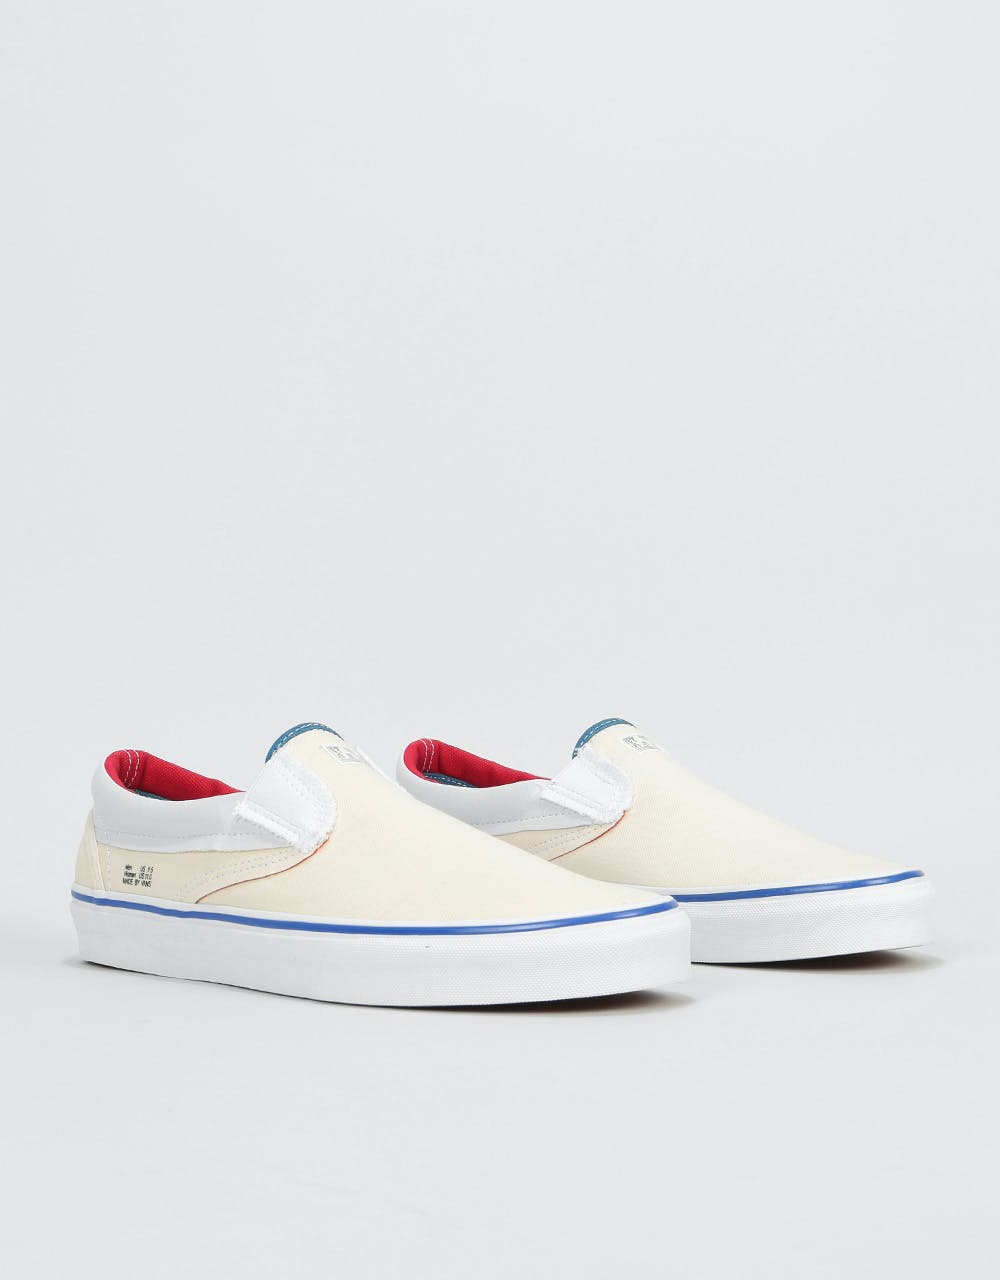 Vans Classic Slip-On Skate Shoes - (Outside In) Natural/Stv Navy/Red